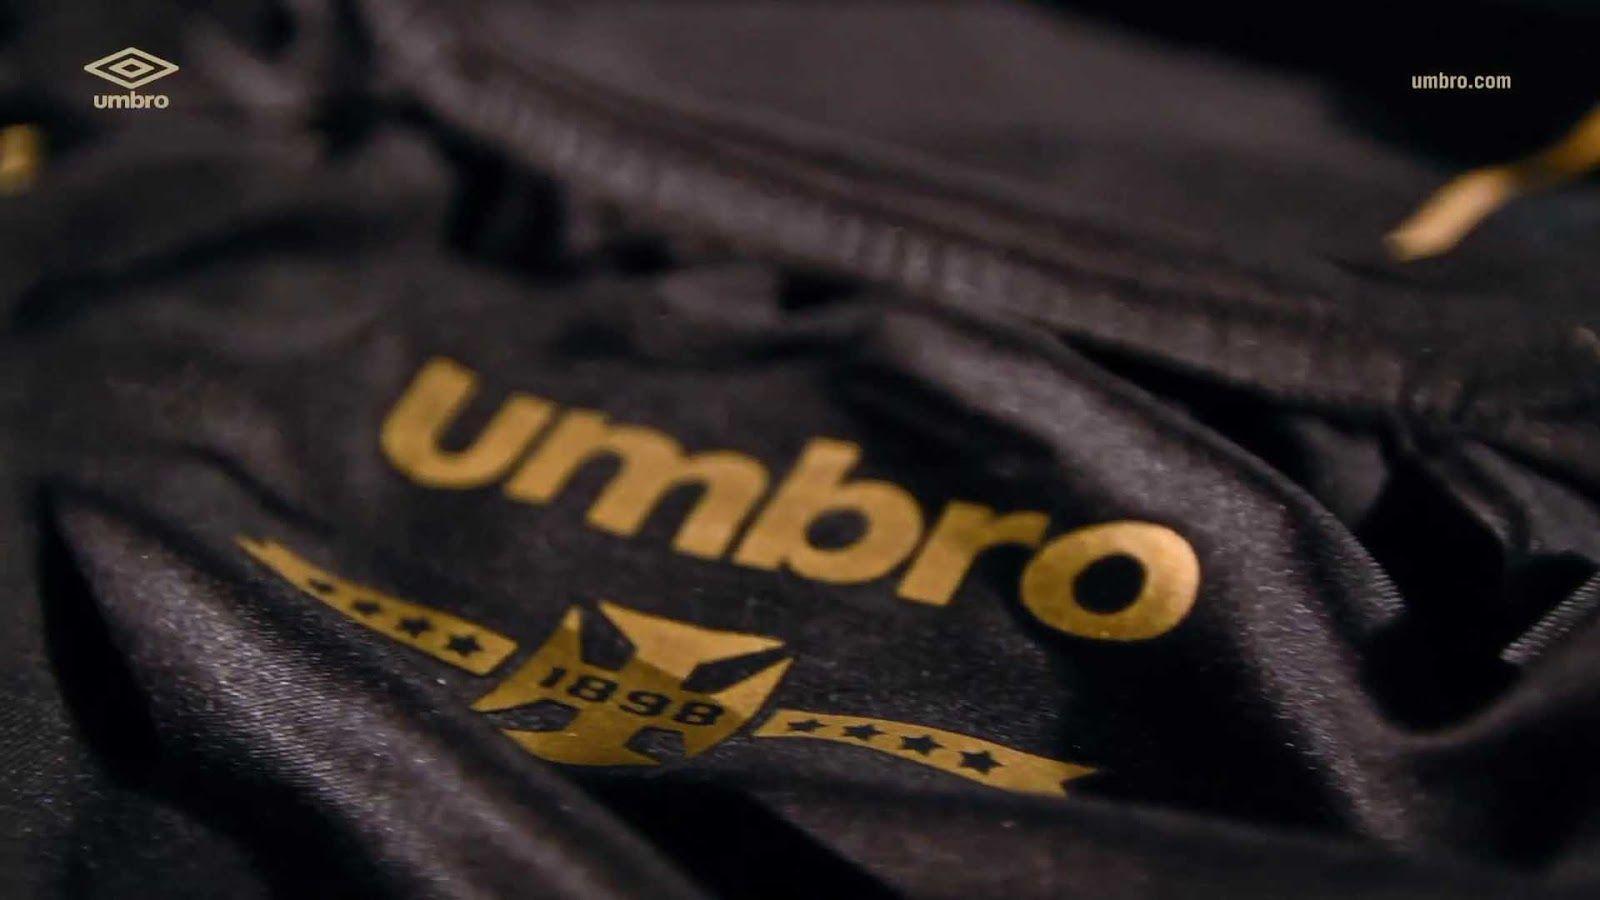 Umbro Vasco Da Gama 2015 16 Third Kit Released